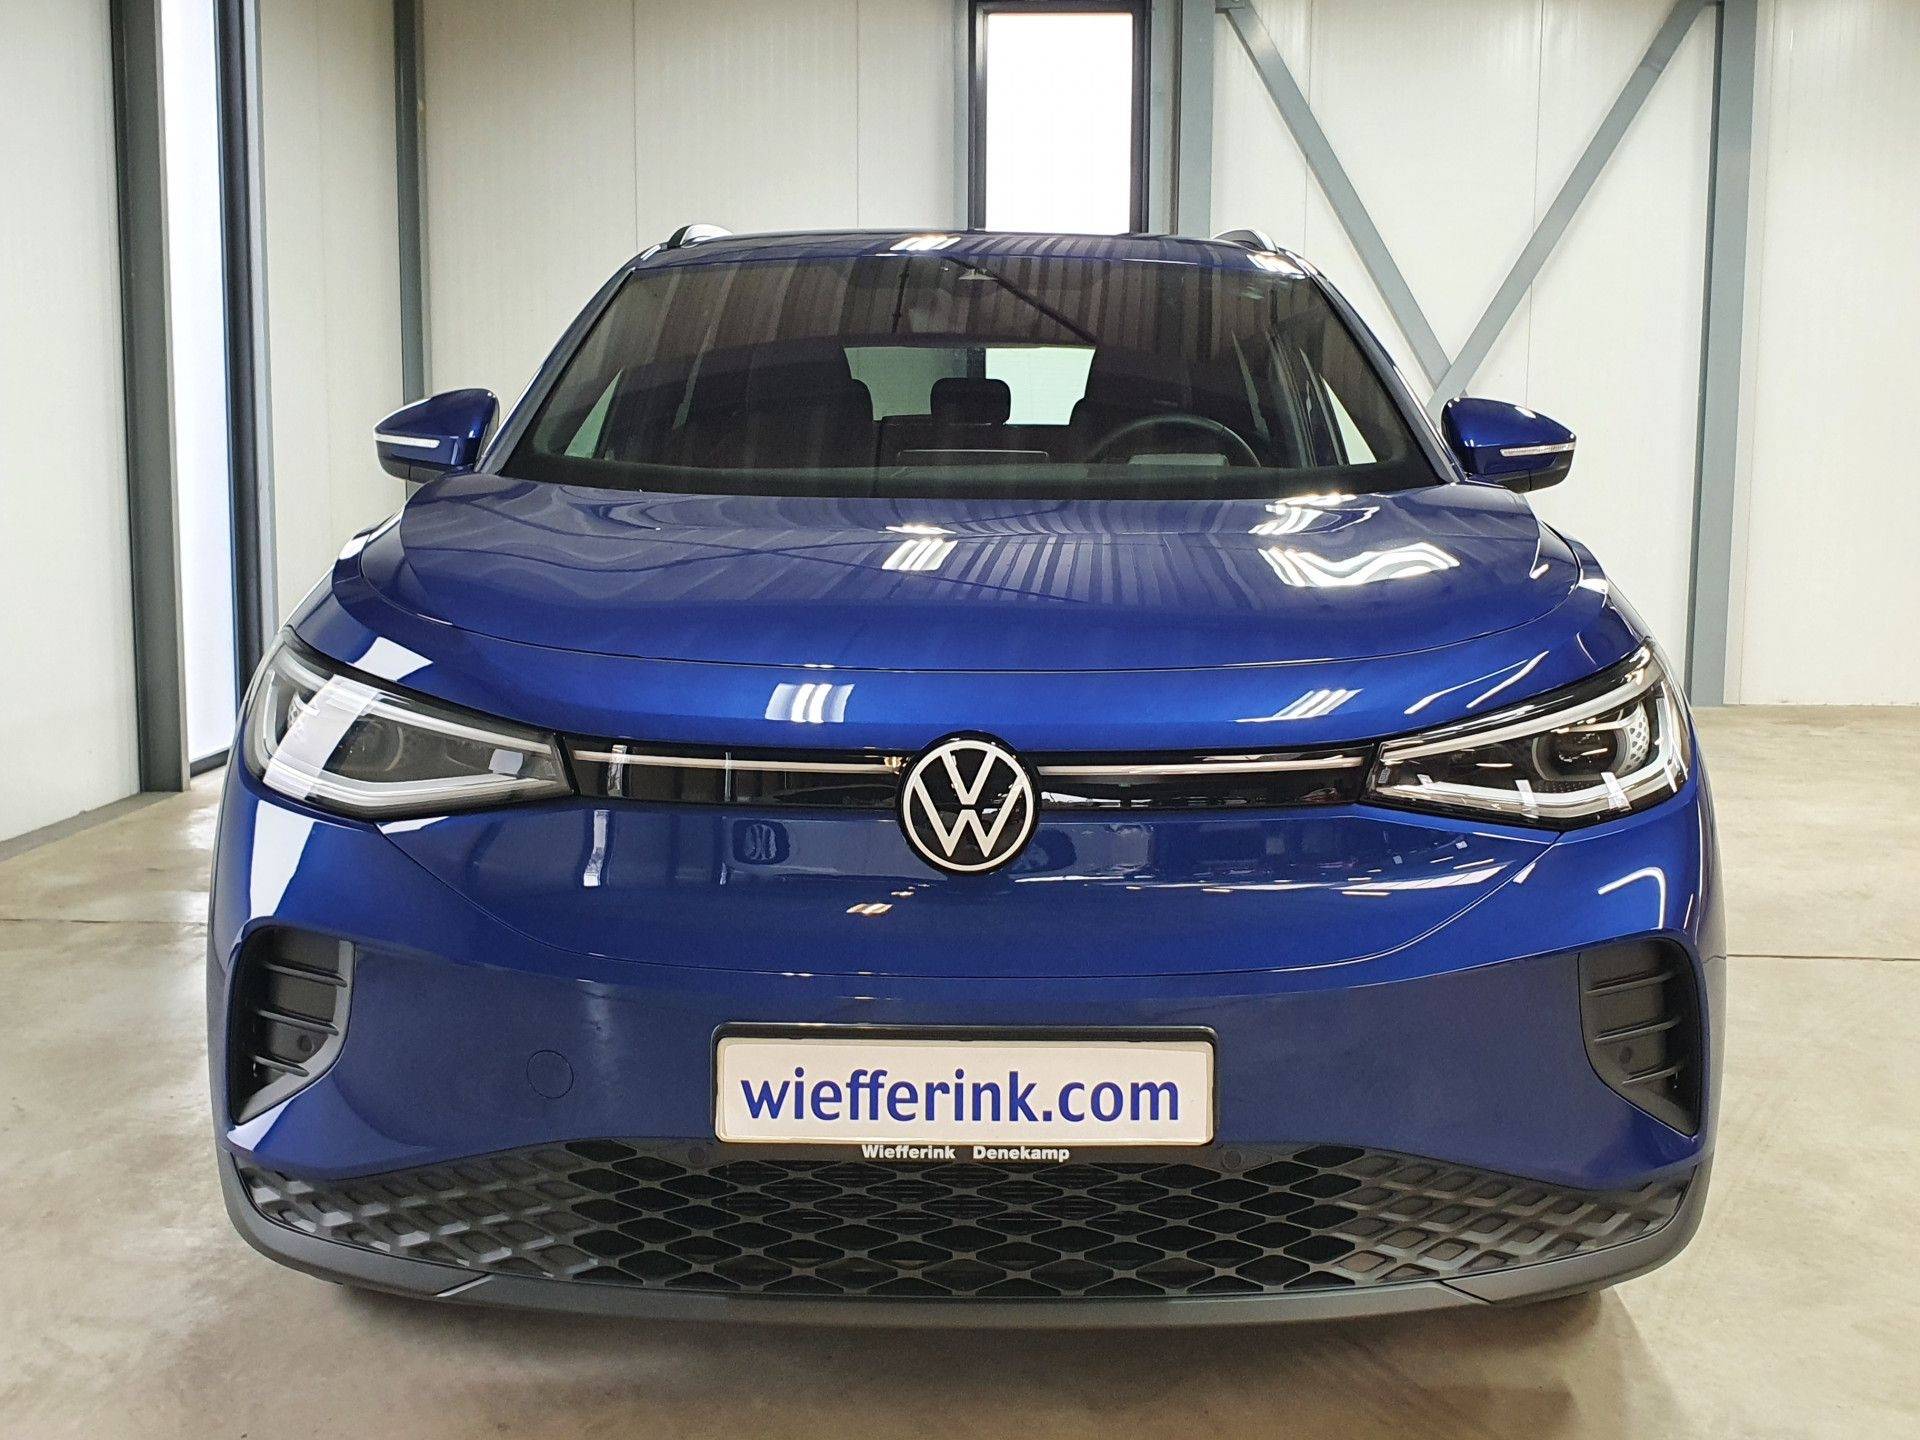 Volkswagen ID.4 Style 52 kWh bijtelling va 194 p/m Navigatie Camera trekhaak - 3/26